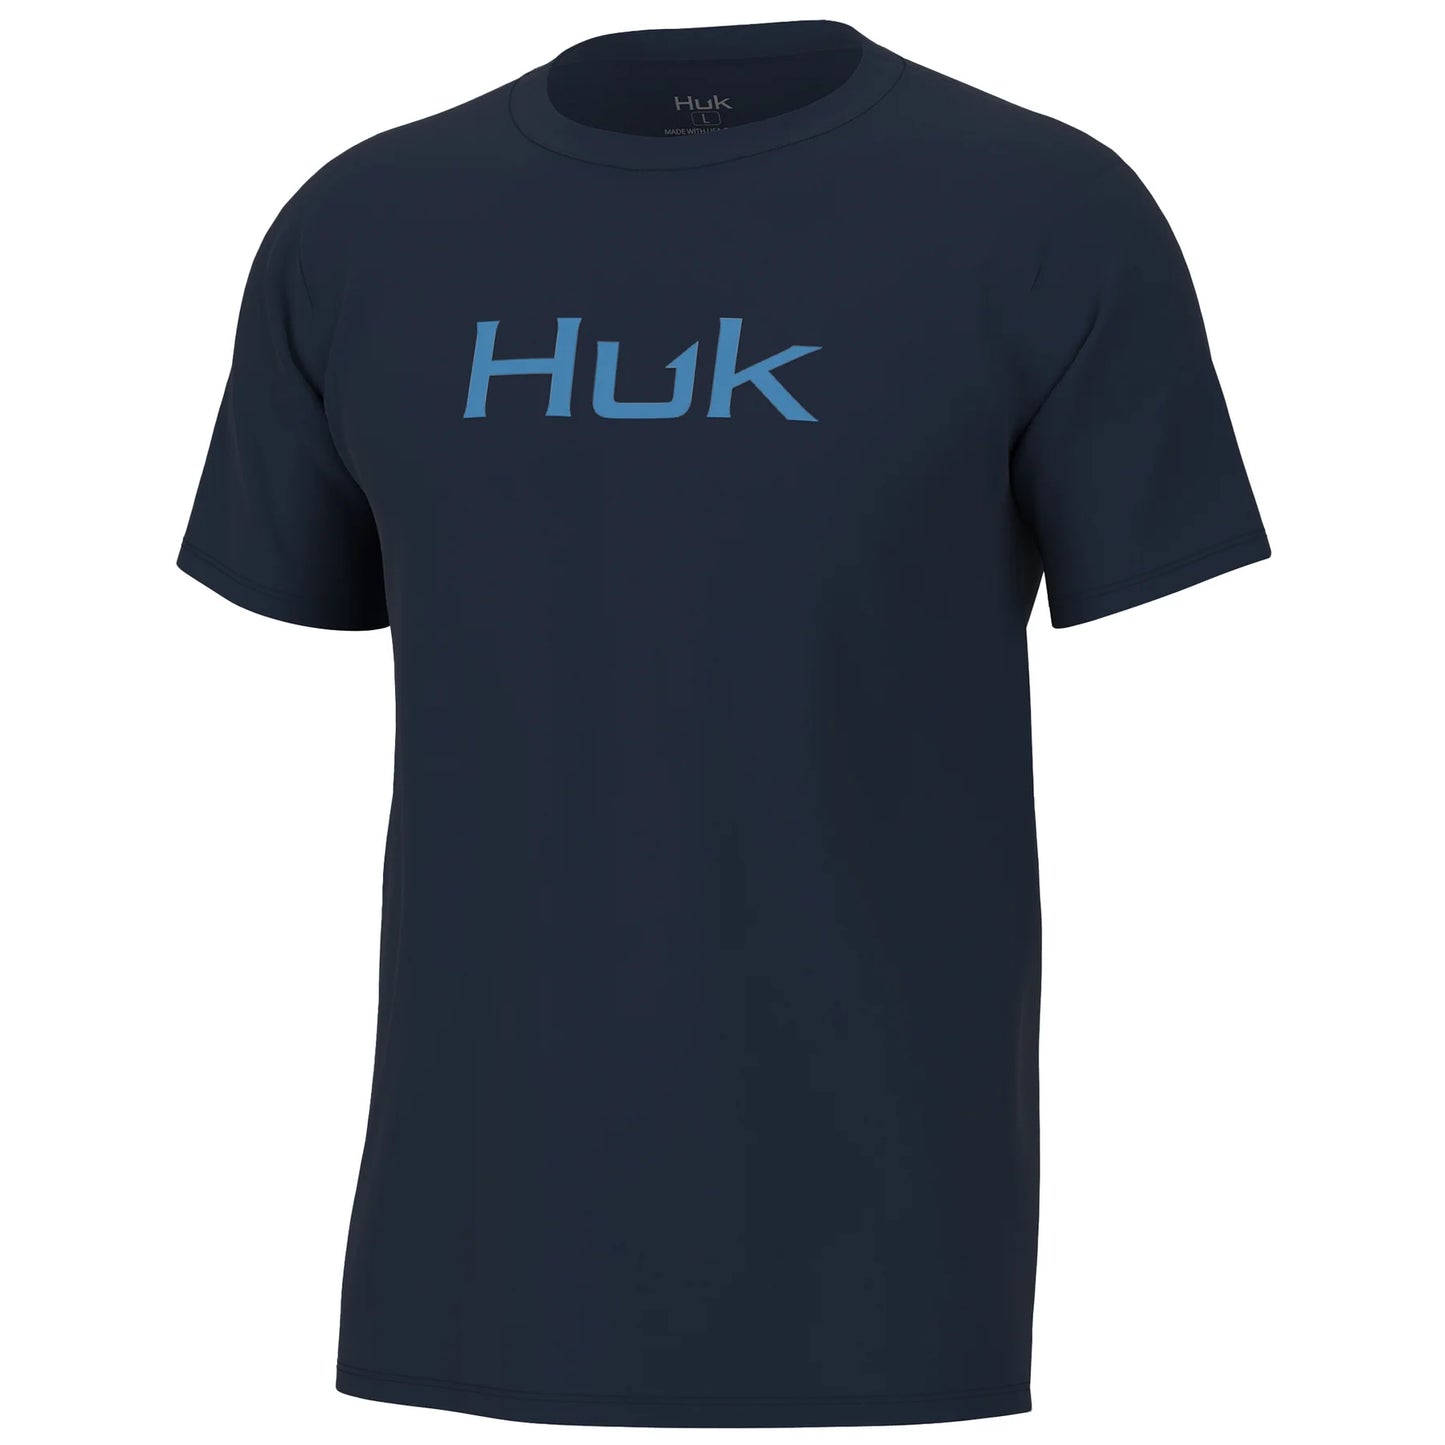 Huk Logo Tee - Set Sail lol